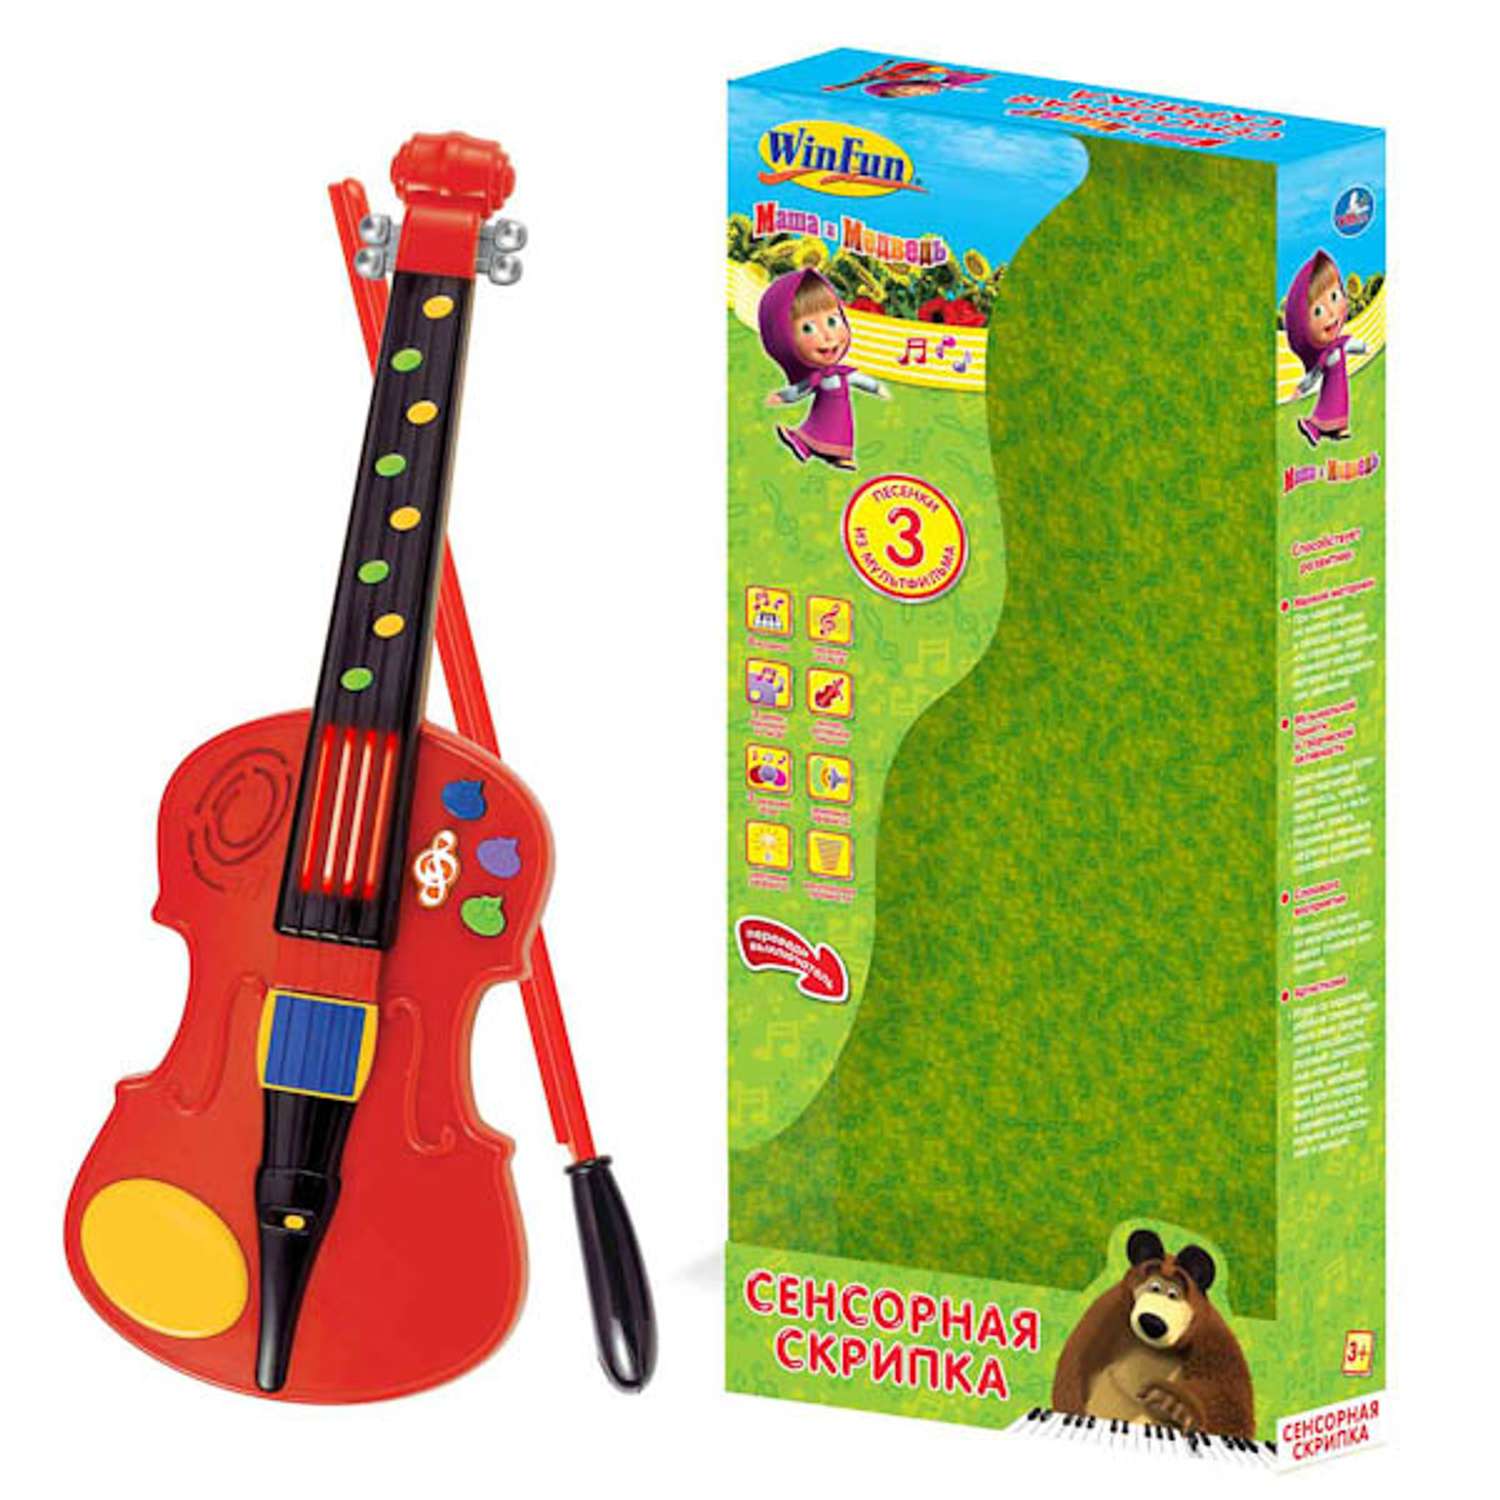 Сенсорная скрипка Маша и Медведь Маша и медведь (+ 3 песни) - фото 2